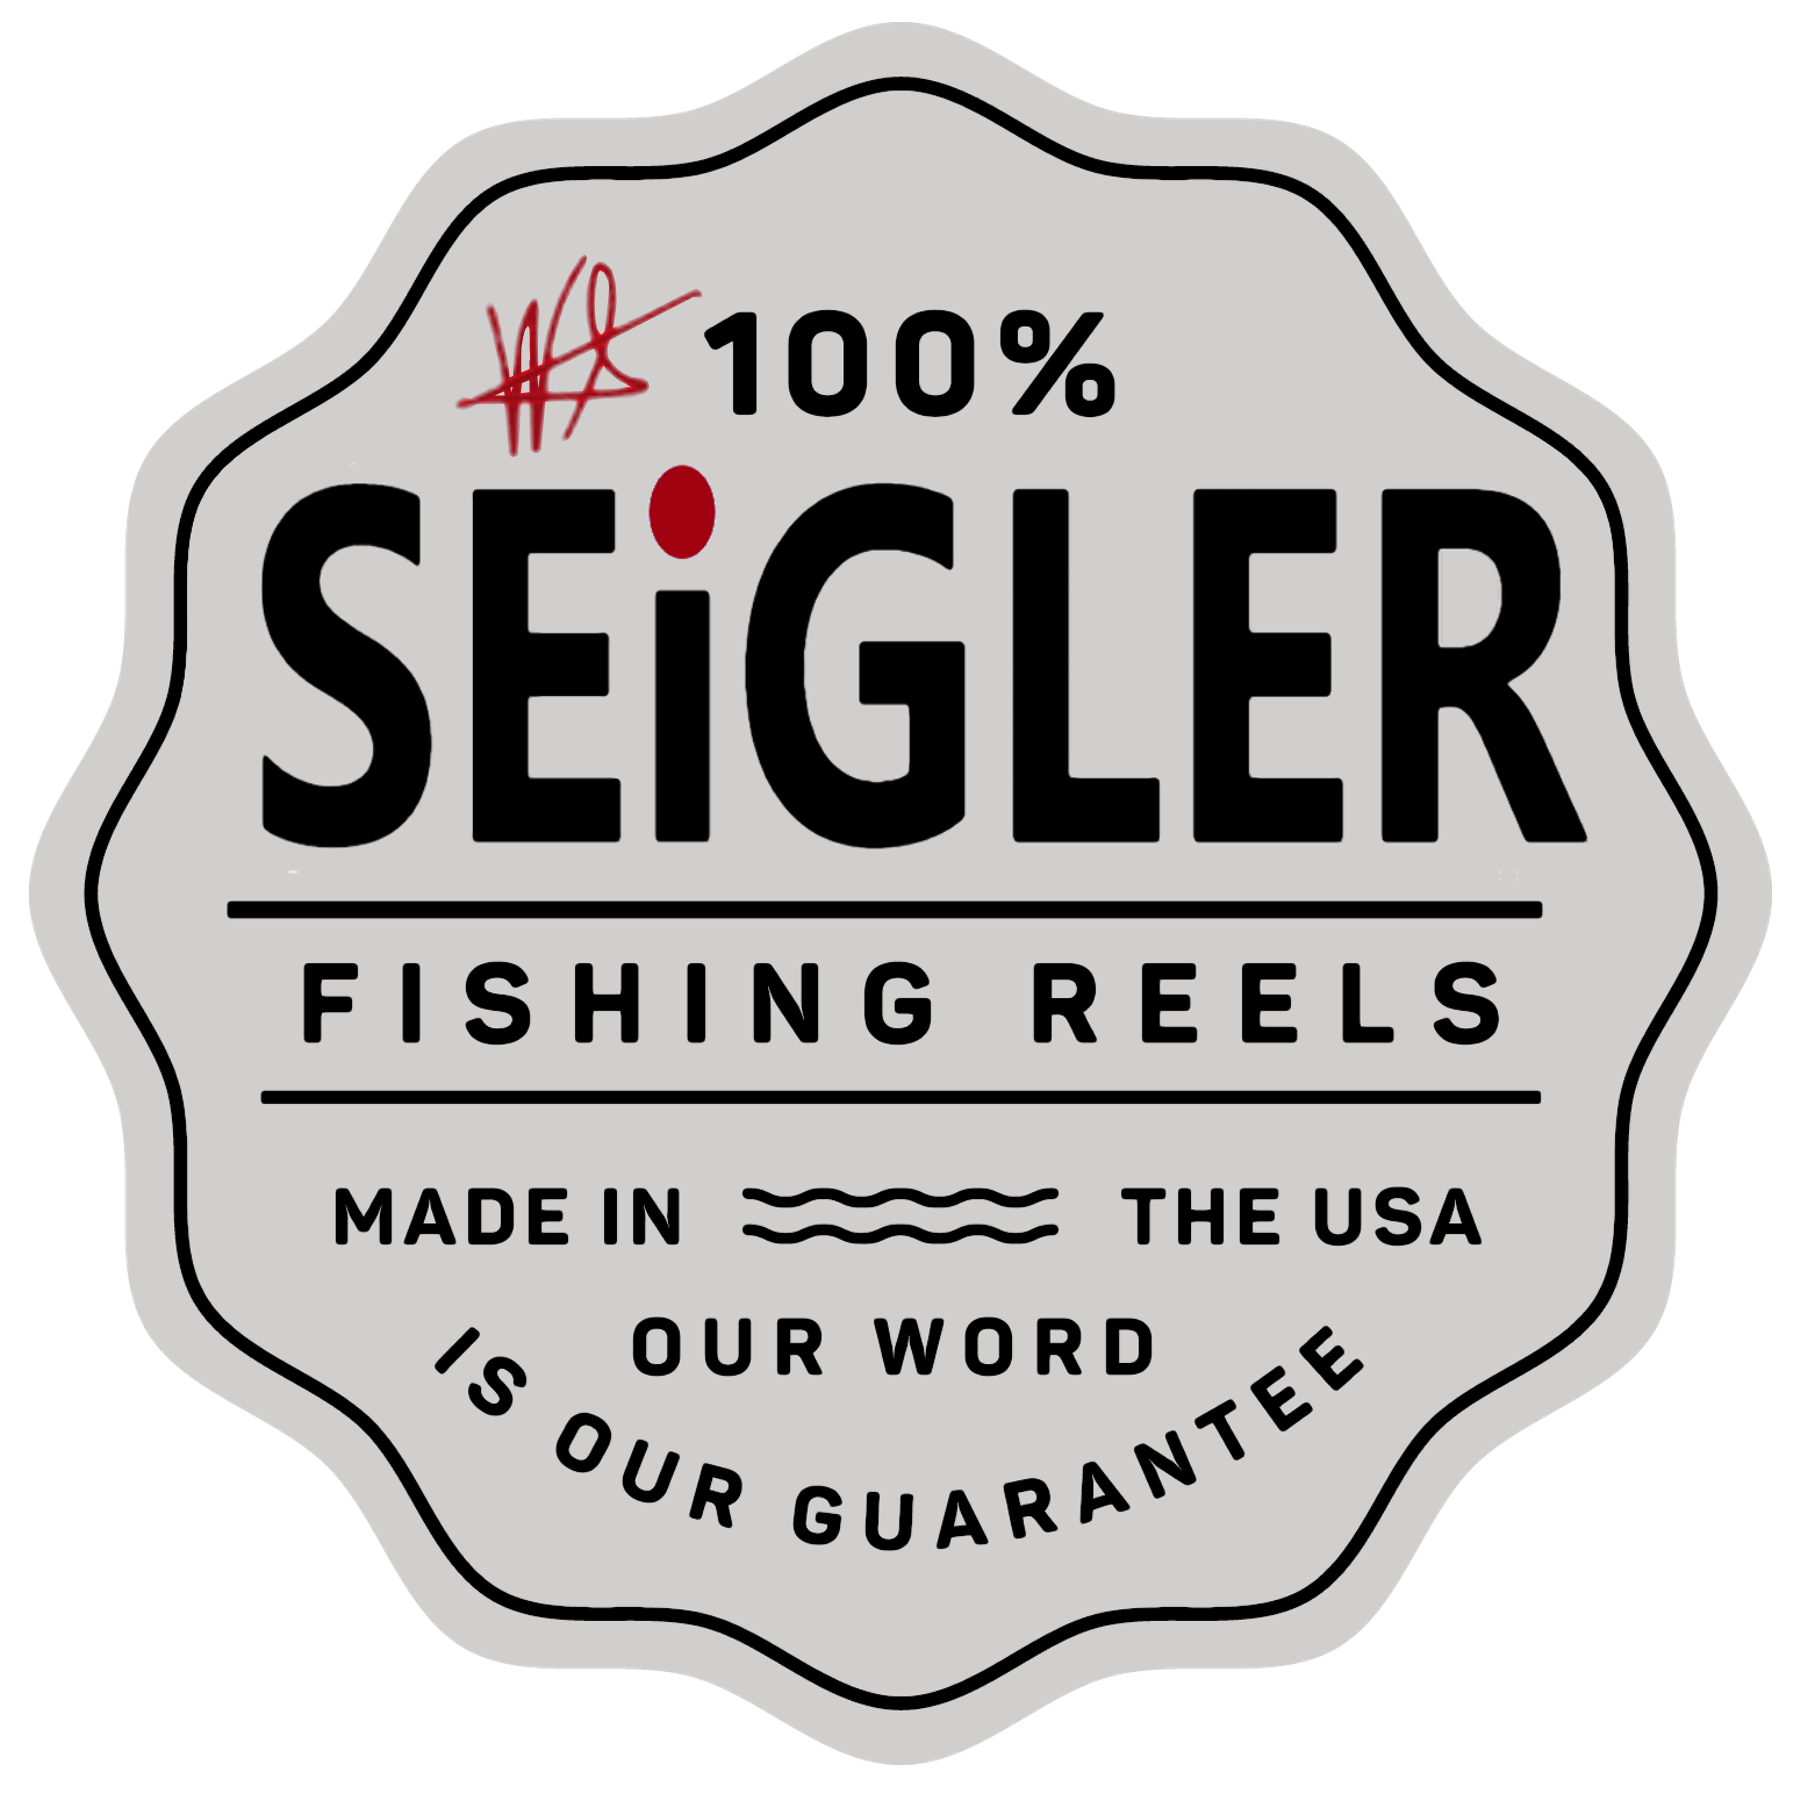 Seigler